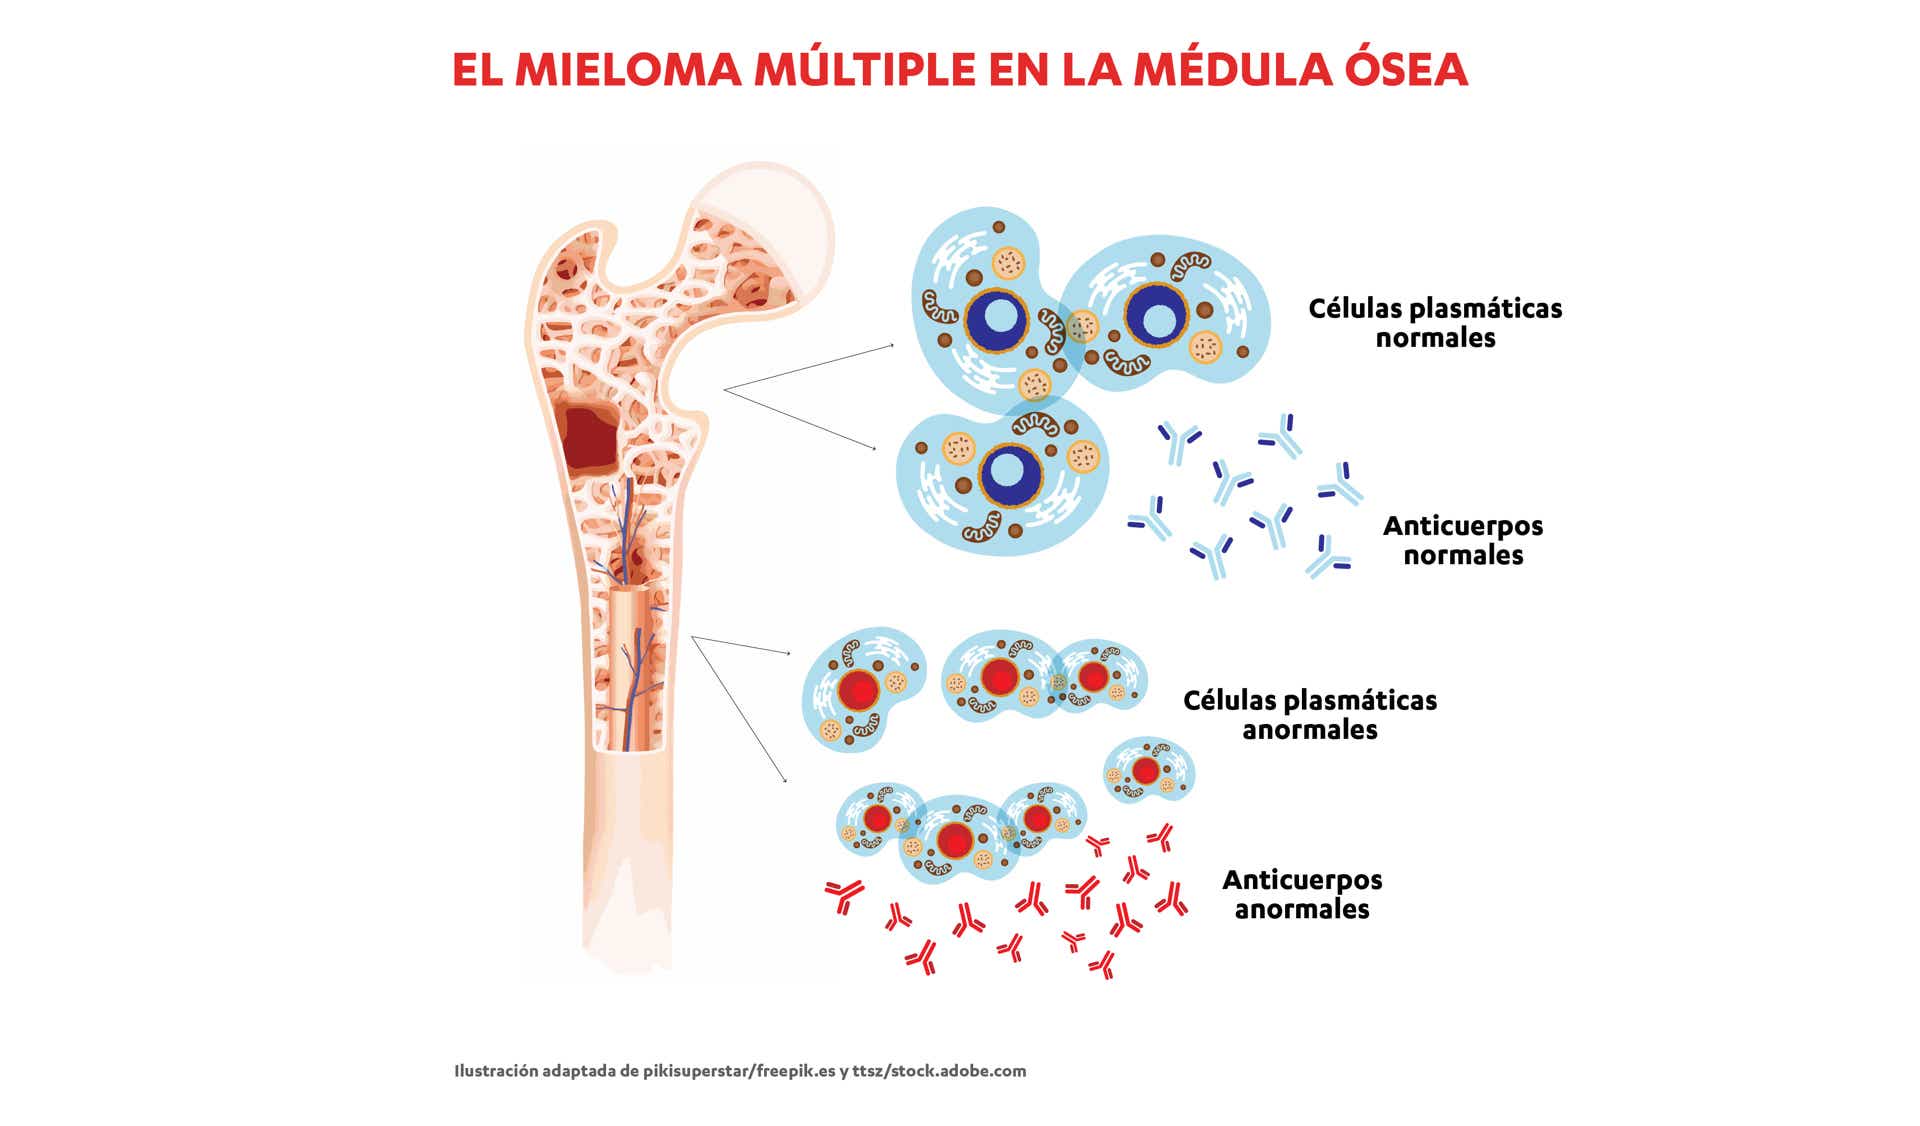 Cuando las células plasmáticas crecen de forma descontrolada y se convierten en cancerosas, dan lugar al mieloma múltiple